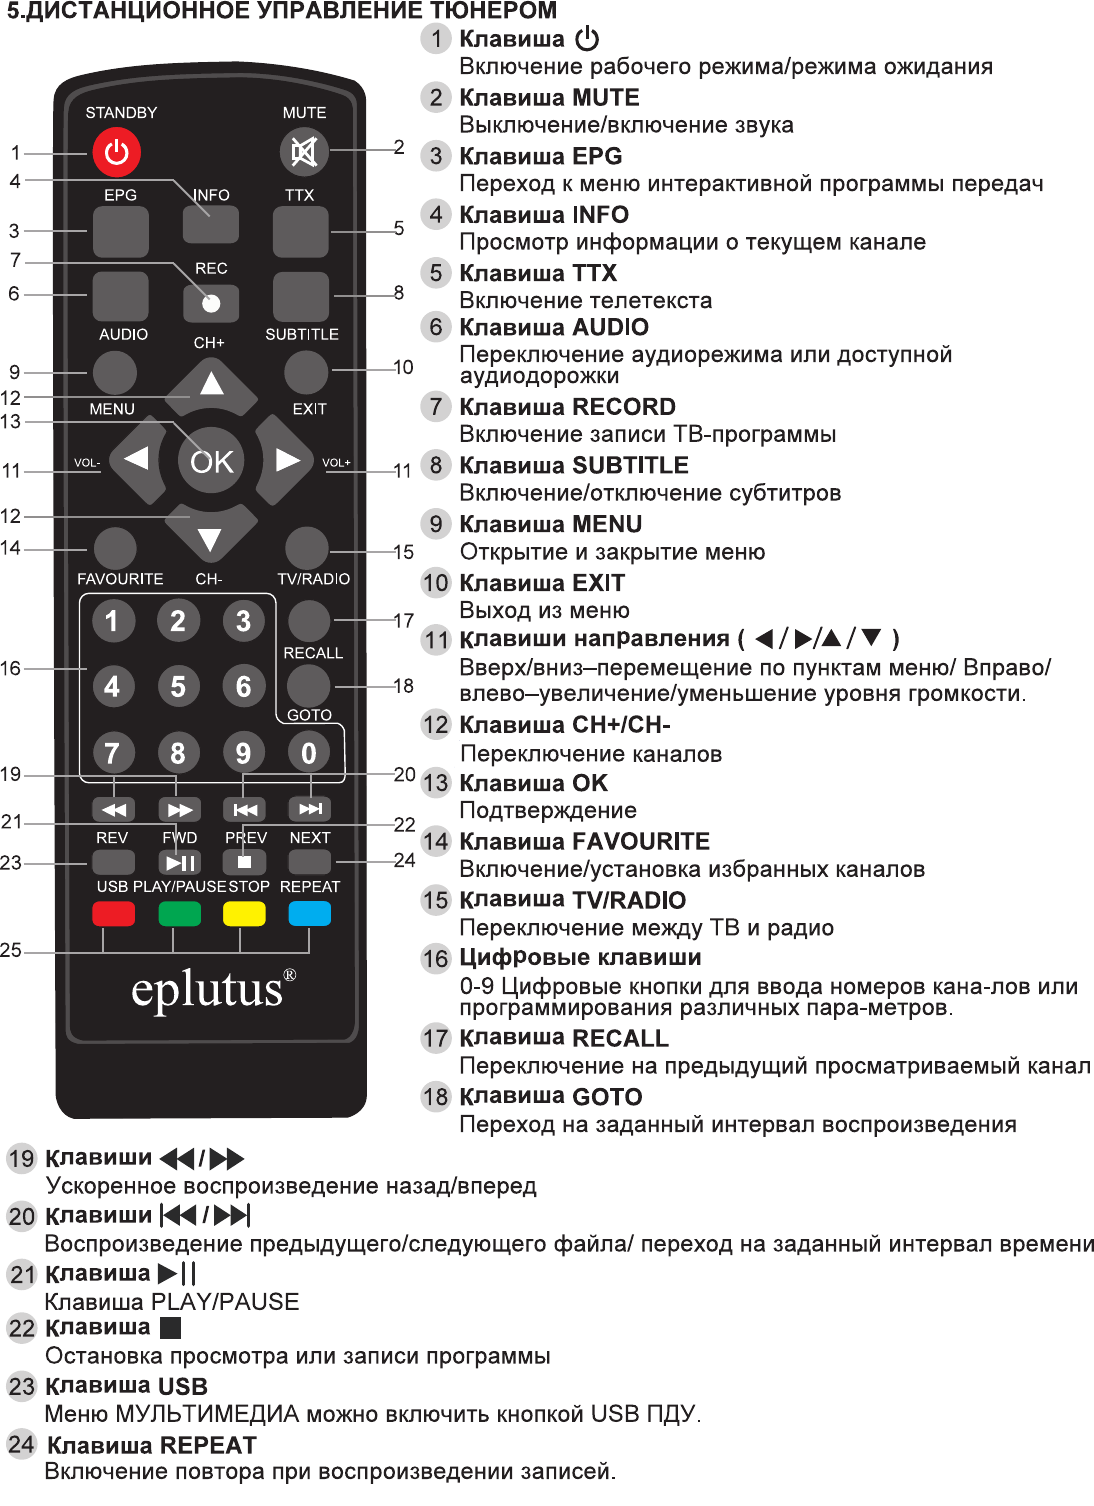 ТВ-приставка Eplutus DVB T2-C 128T